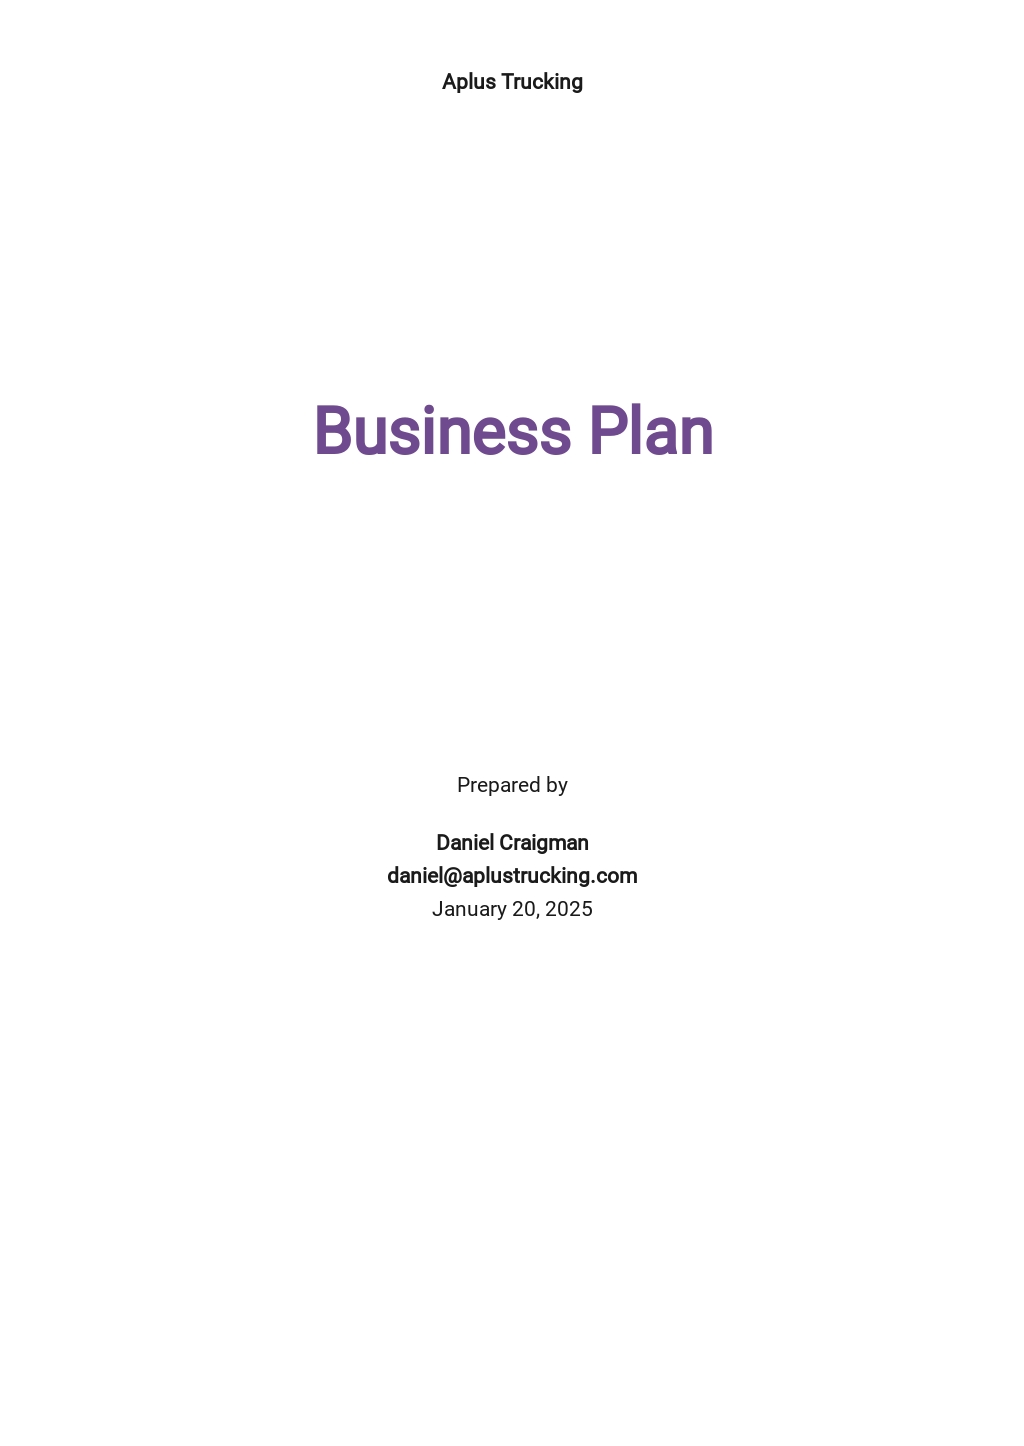 truck business plan template